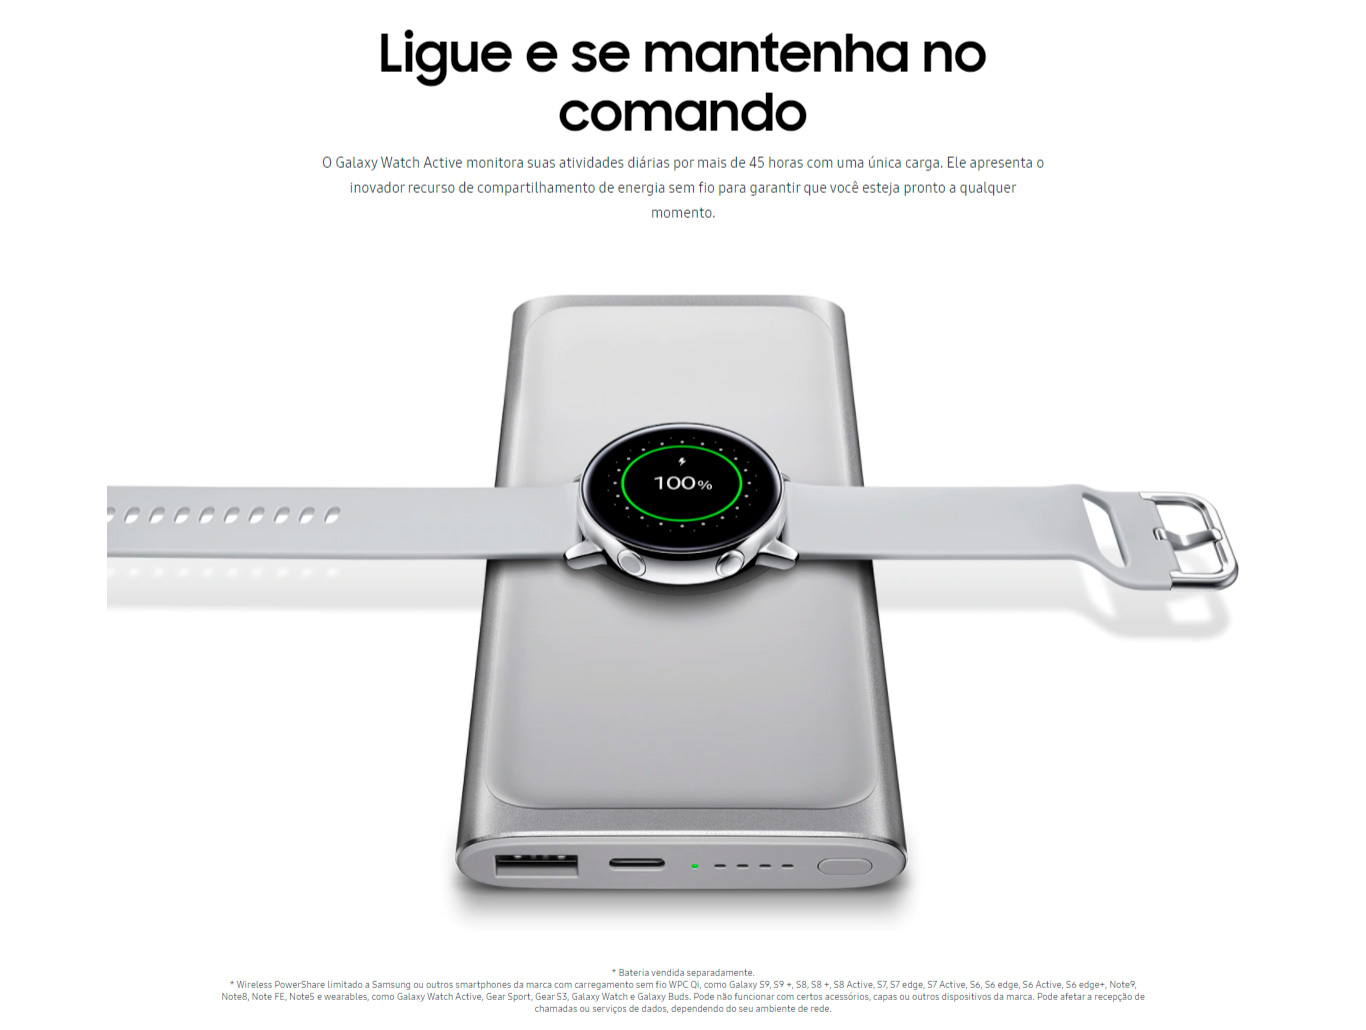  smartwatch-samsung-galaxy-watch-active-4gb-bluetooth-touchscreen-rose-sm-r500nzdazto 